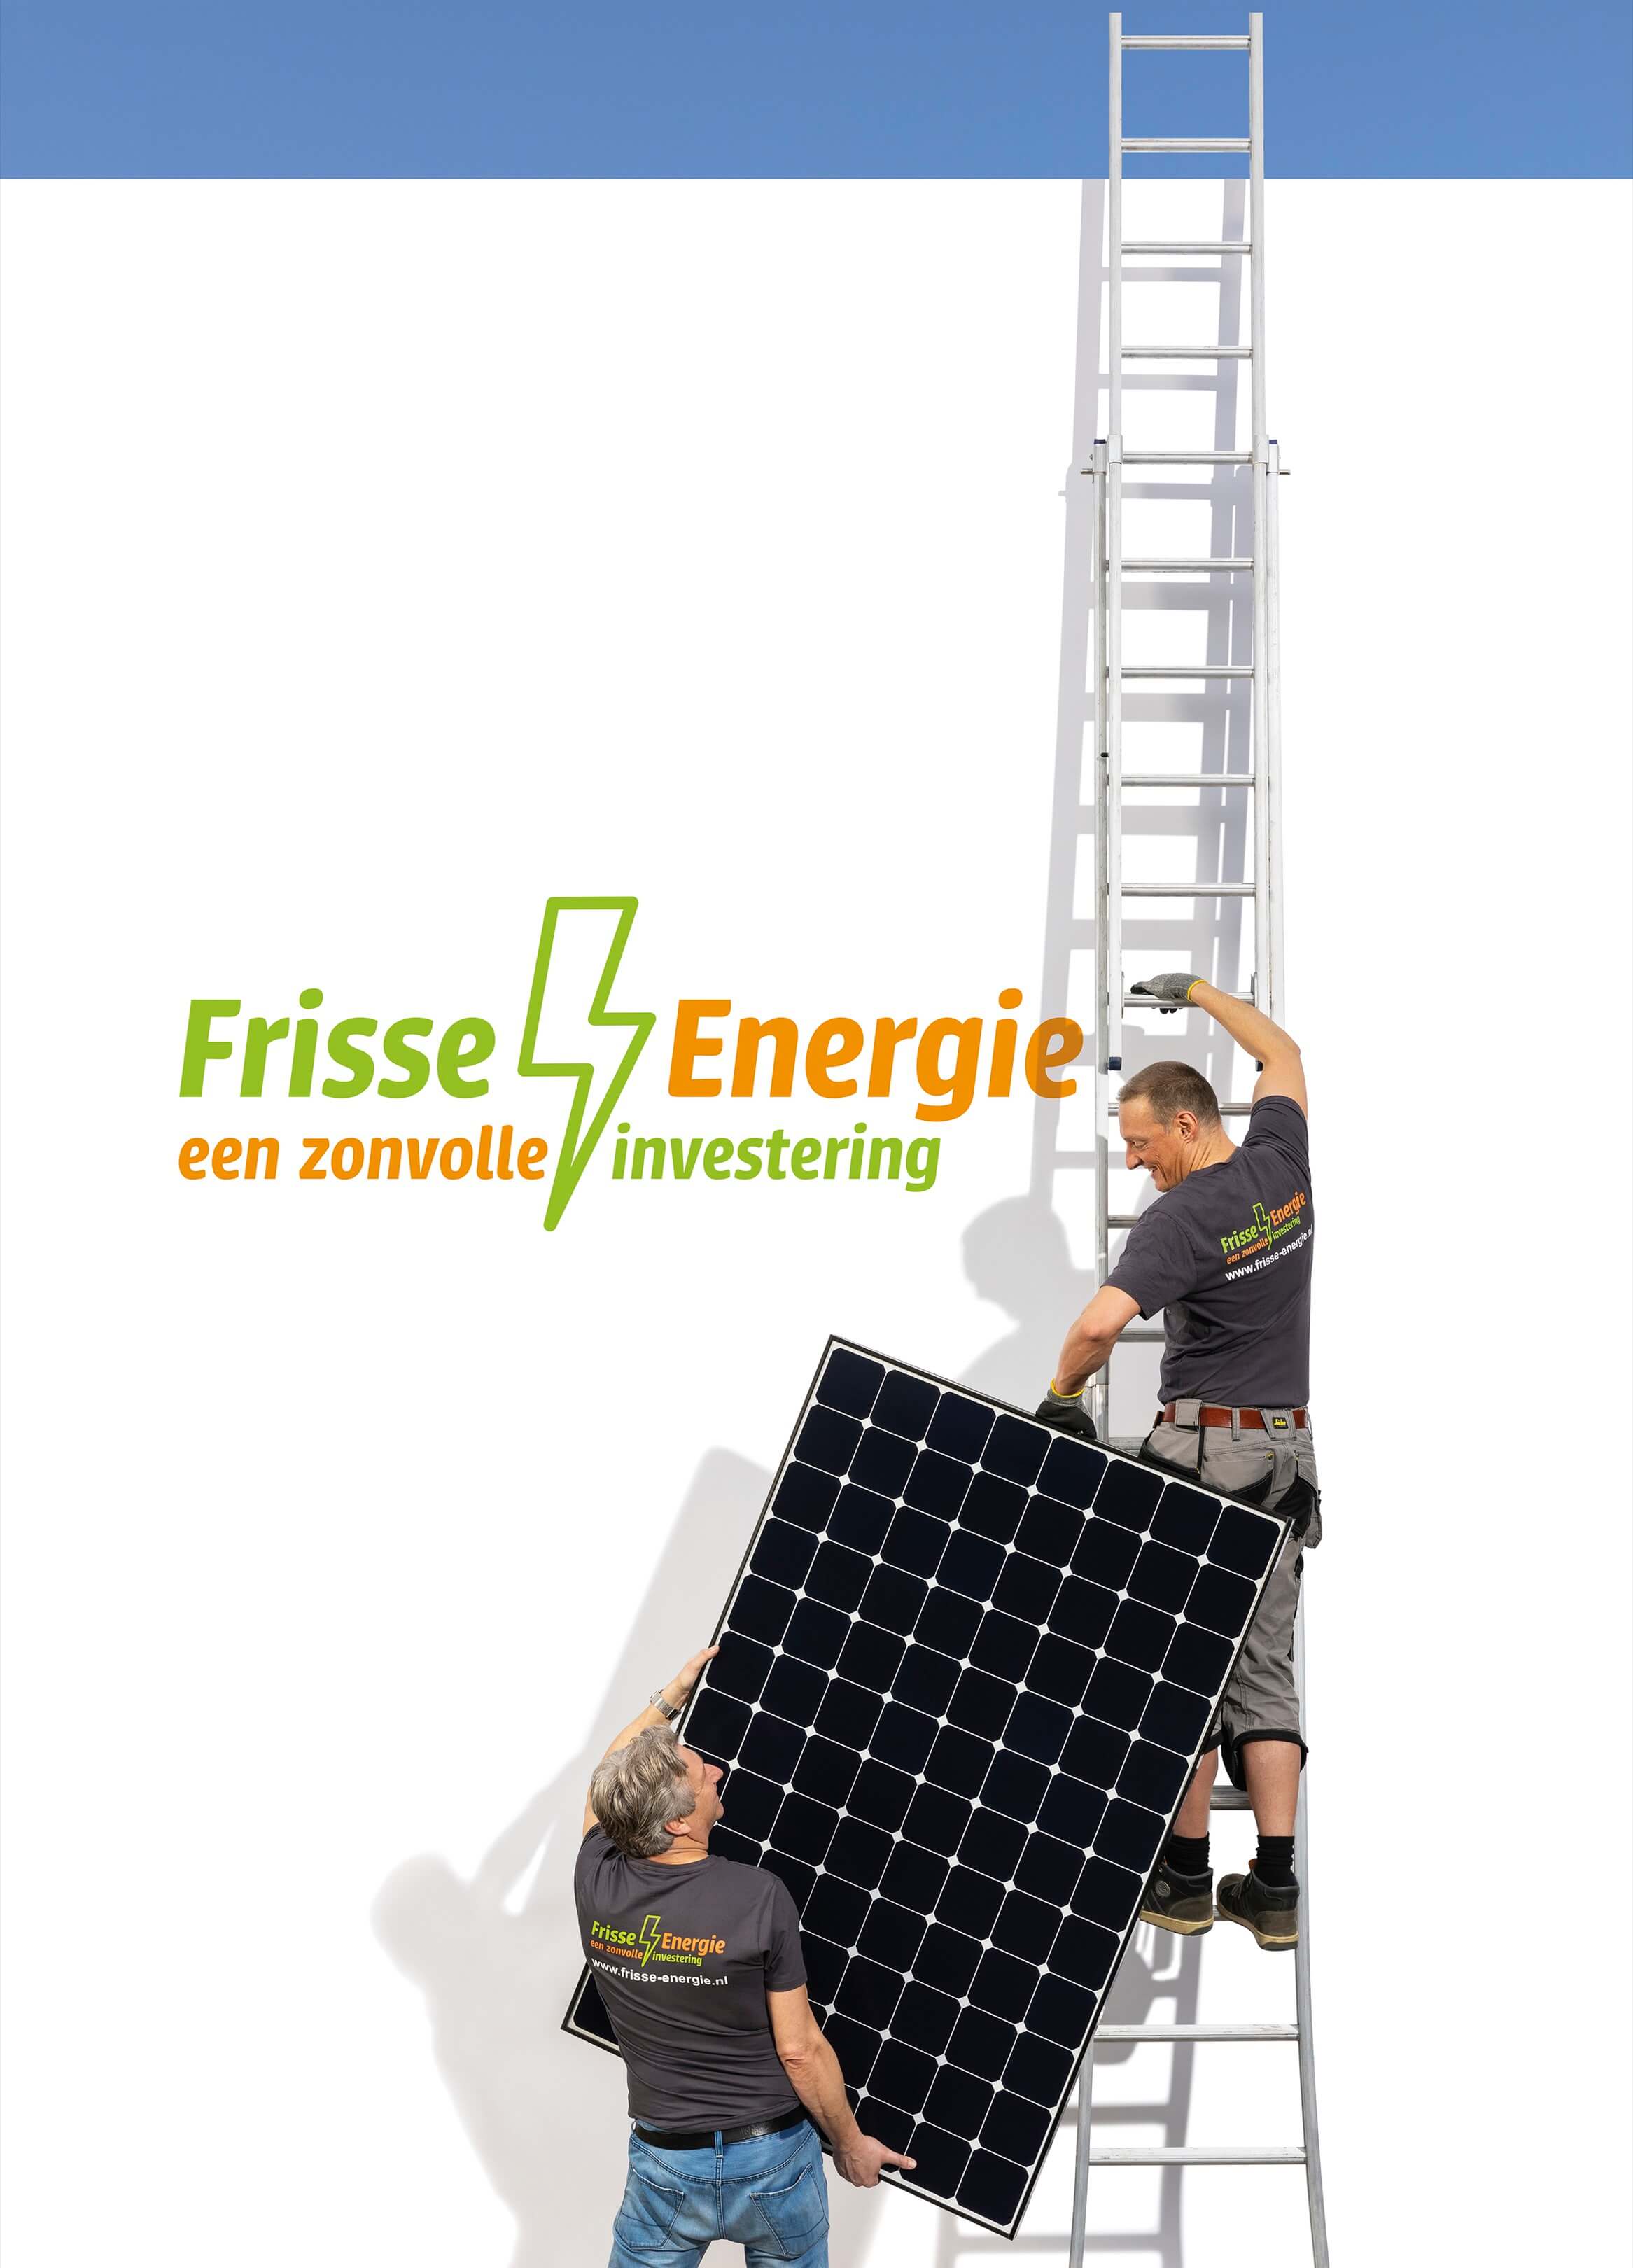 Frisse energie Jurjen Poeles fotografie campagne Arnhem billboard wildplakken grootformaat zonnepanelen groene energie